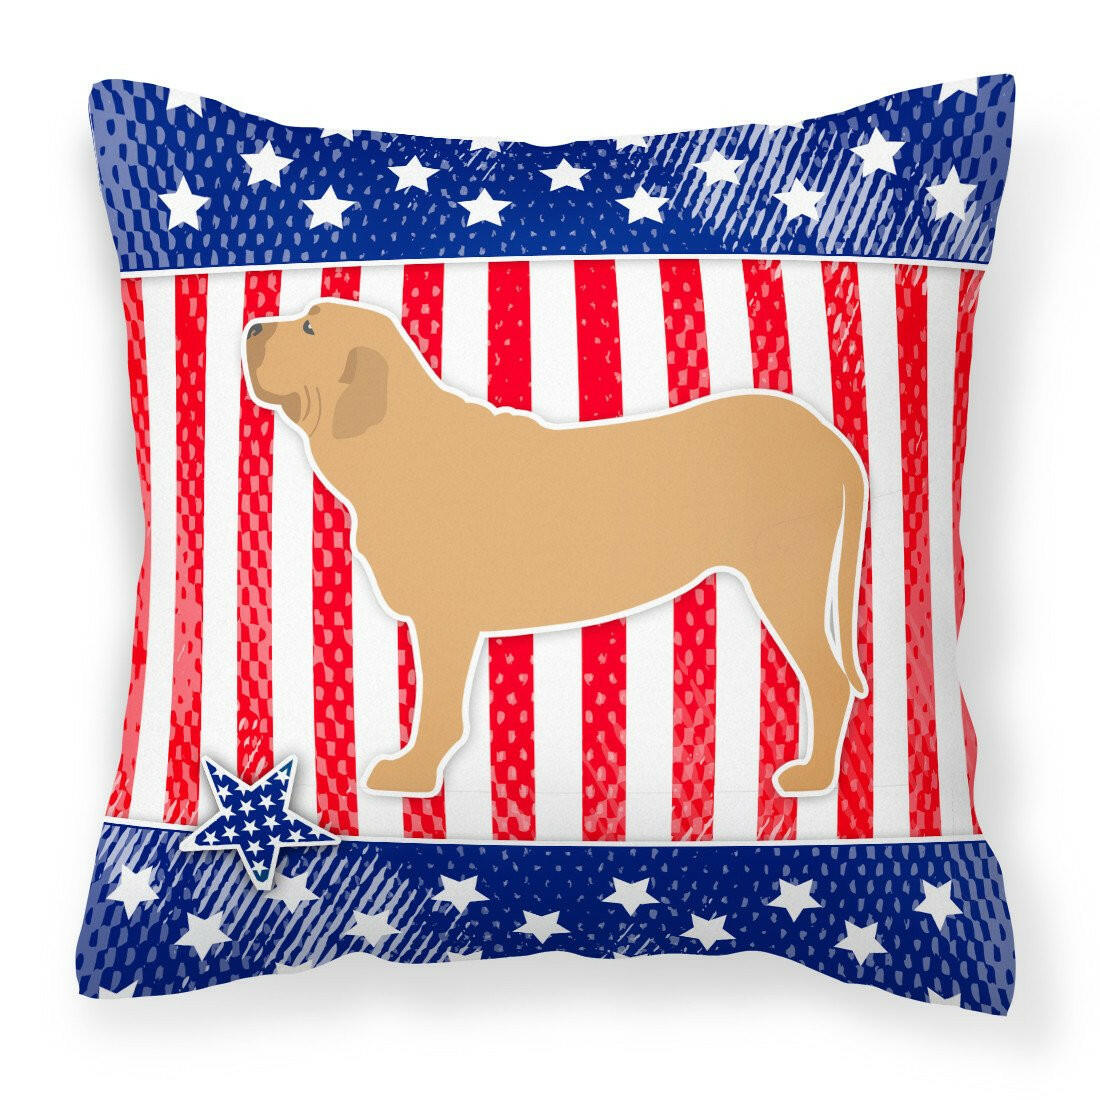 USA Patriotic Fila Brasileiro Fabric Decorative Pillow BB3379PW1818 by Caroline's Treasures